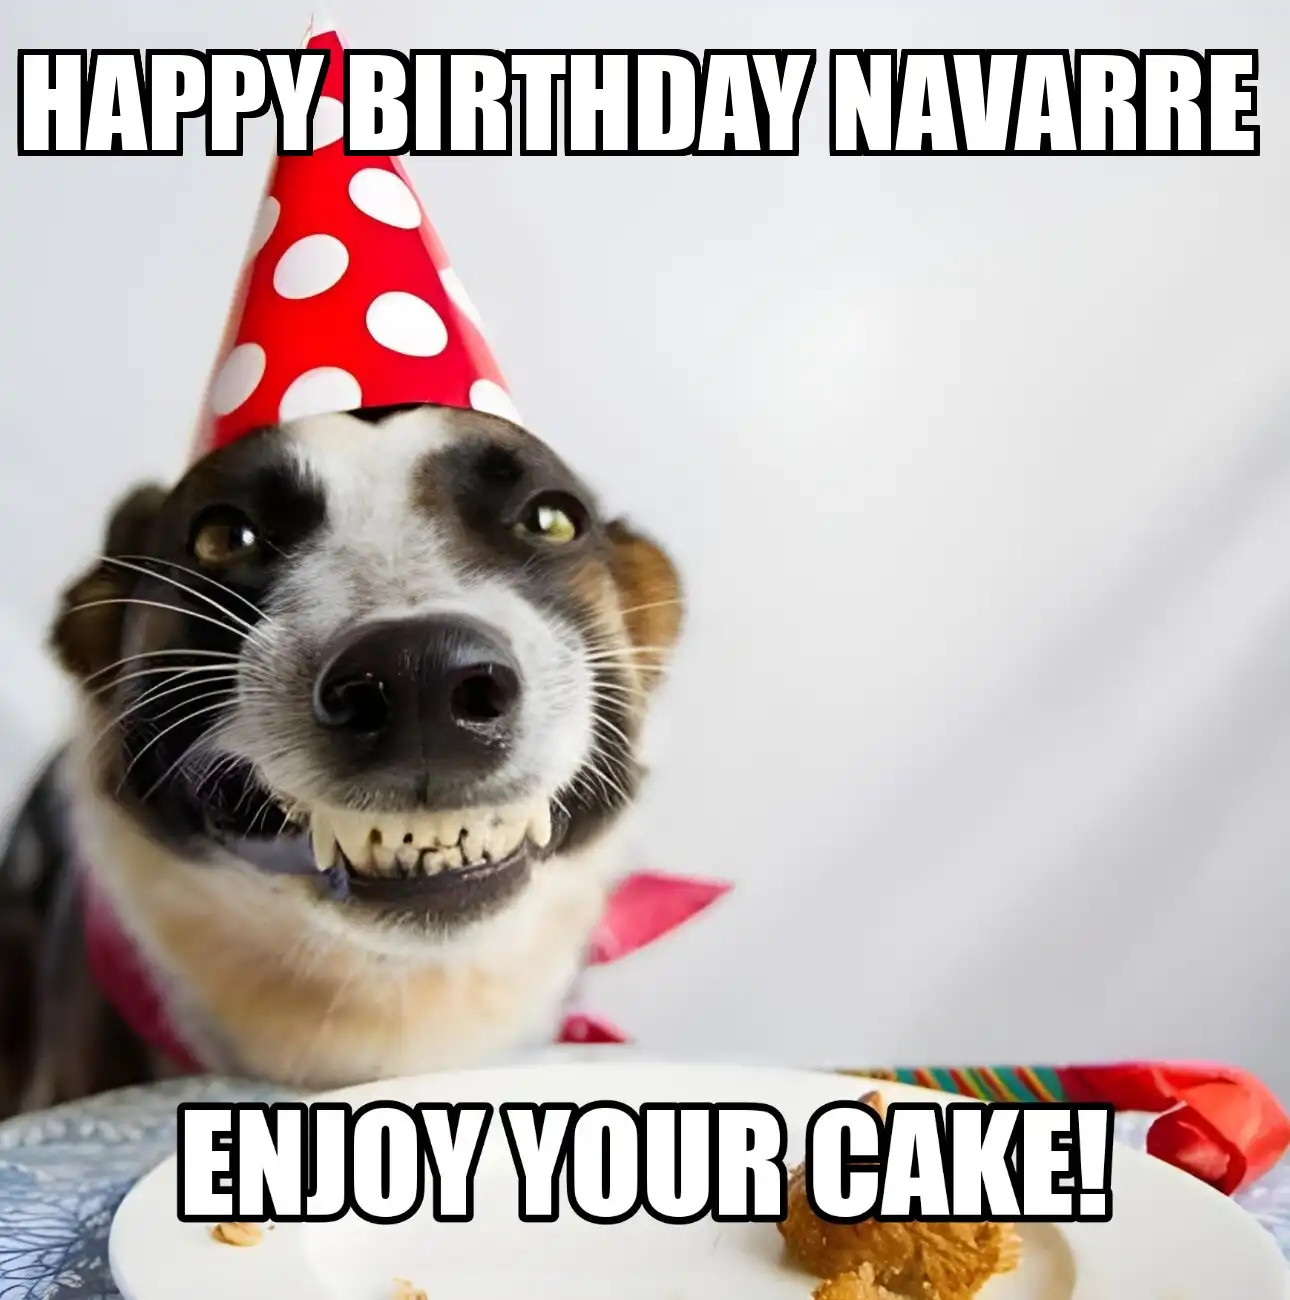 Happy Birthday Navarre Enjoy Your Cake Dog Meme